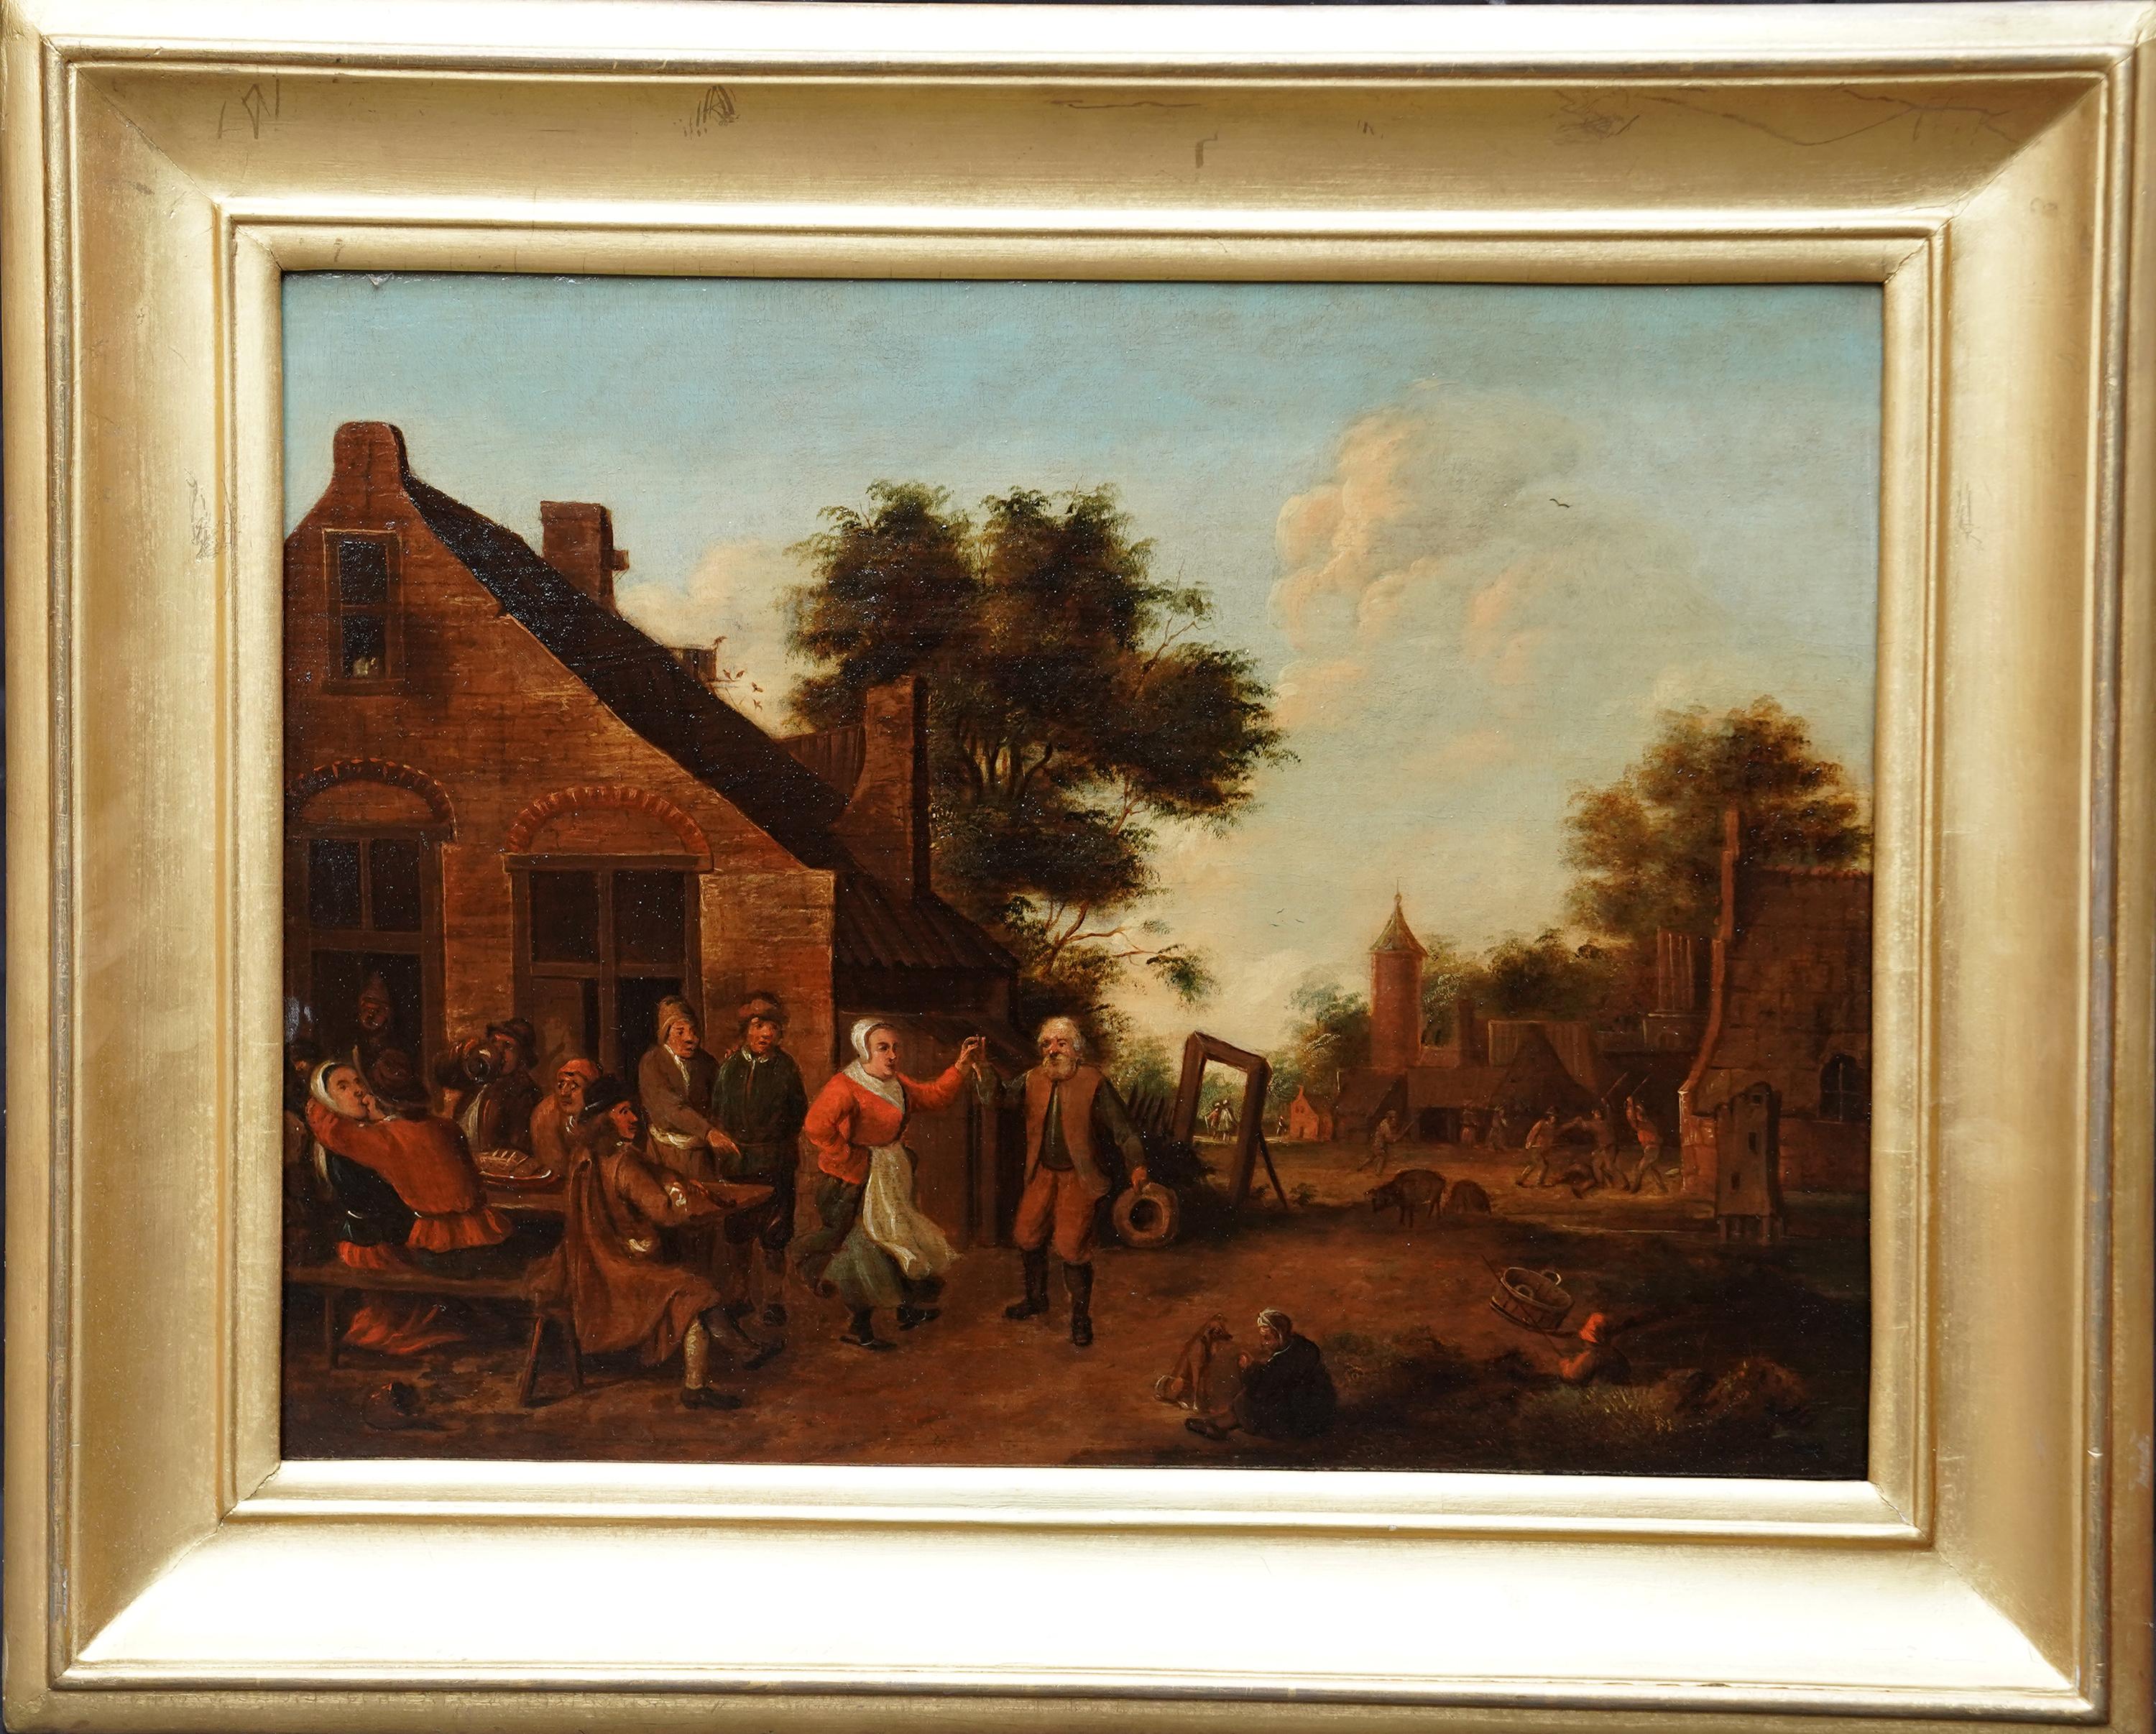 Thomas van Apshoven Landscape Painting - Villagers in a Landscape - Flemish 17thC art figurative landscape oil painting